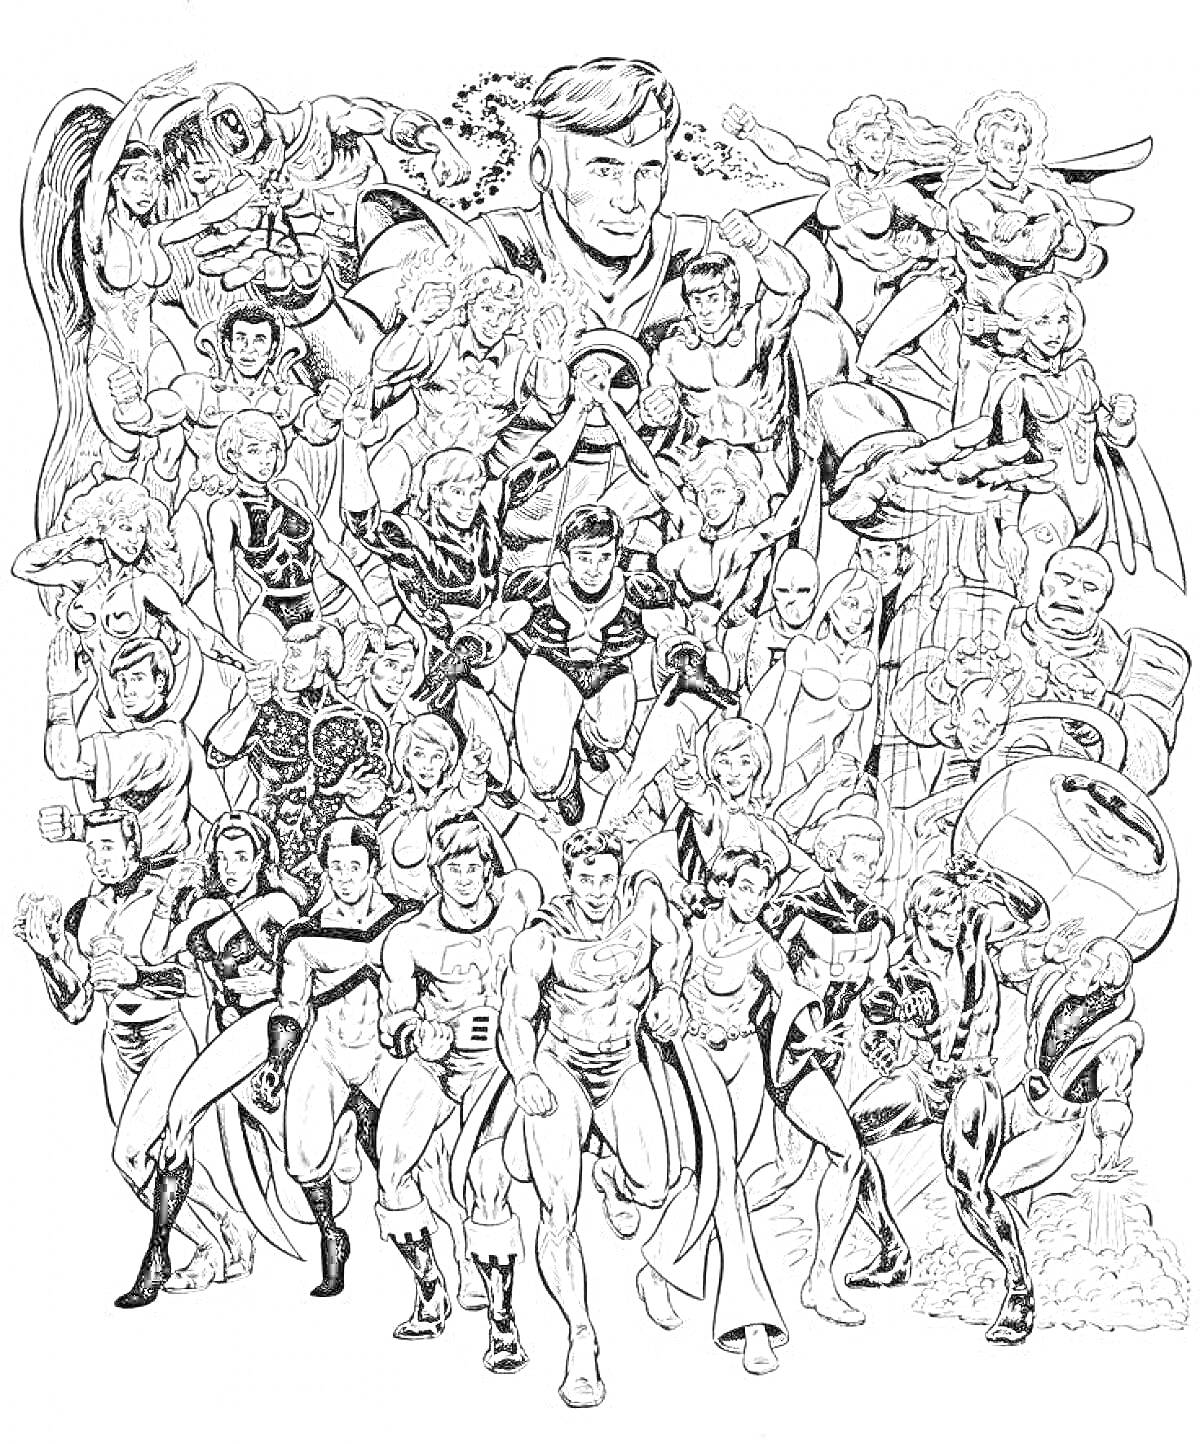 Герои Марвел: Коллективное изображение персонажей из вселенной Marvel, включая самолёт, броню, магические силы и динамичные позы.